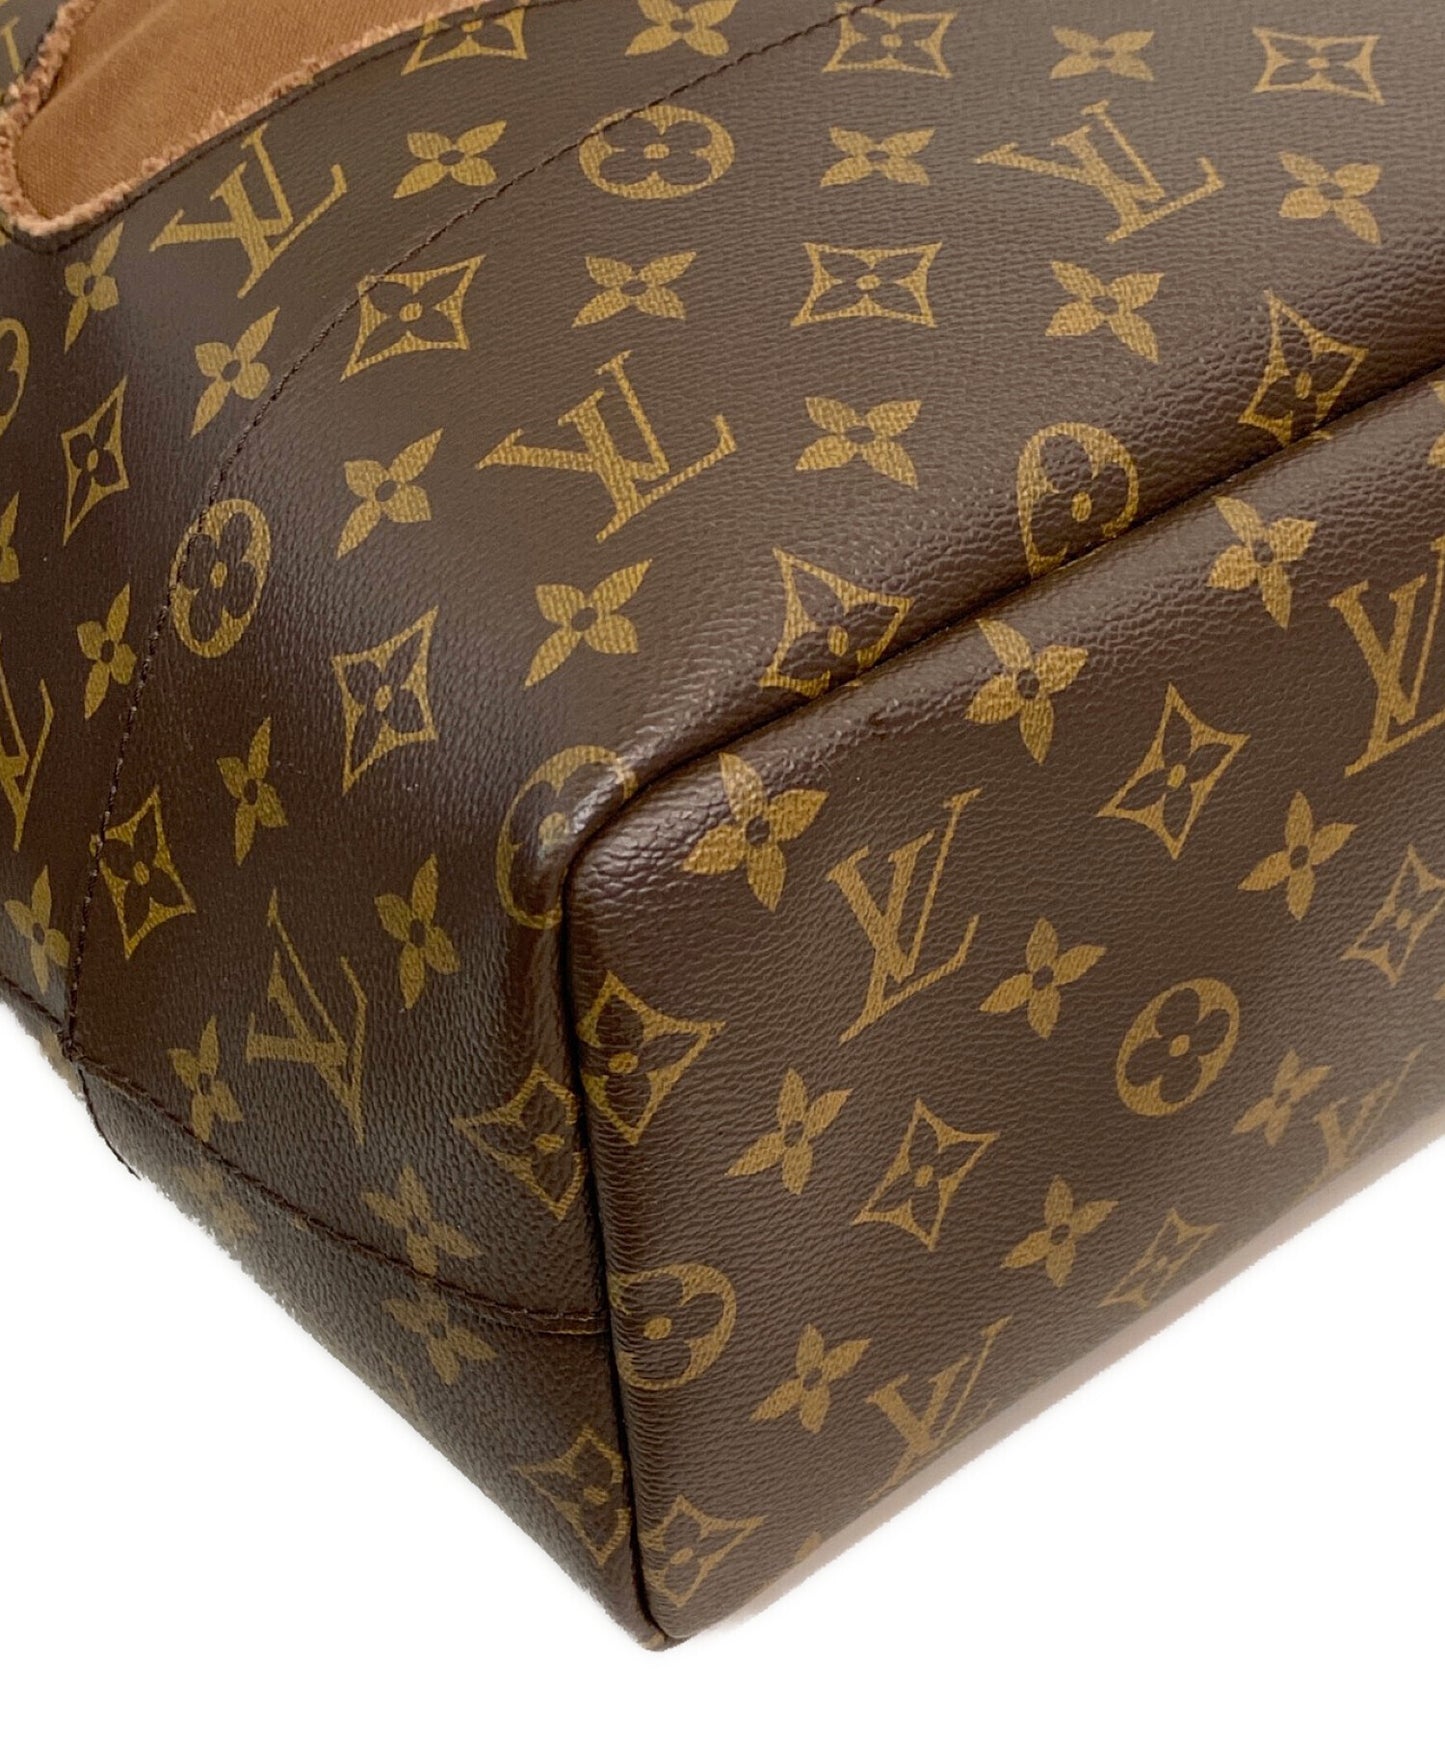 Louis Vuitton LOUIS VUITTON Monogram With Holes Tote Bag M40279 Limited  Comme des Garcons Rei Kawakubo